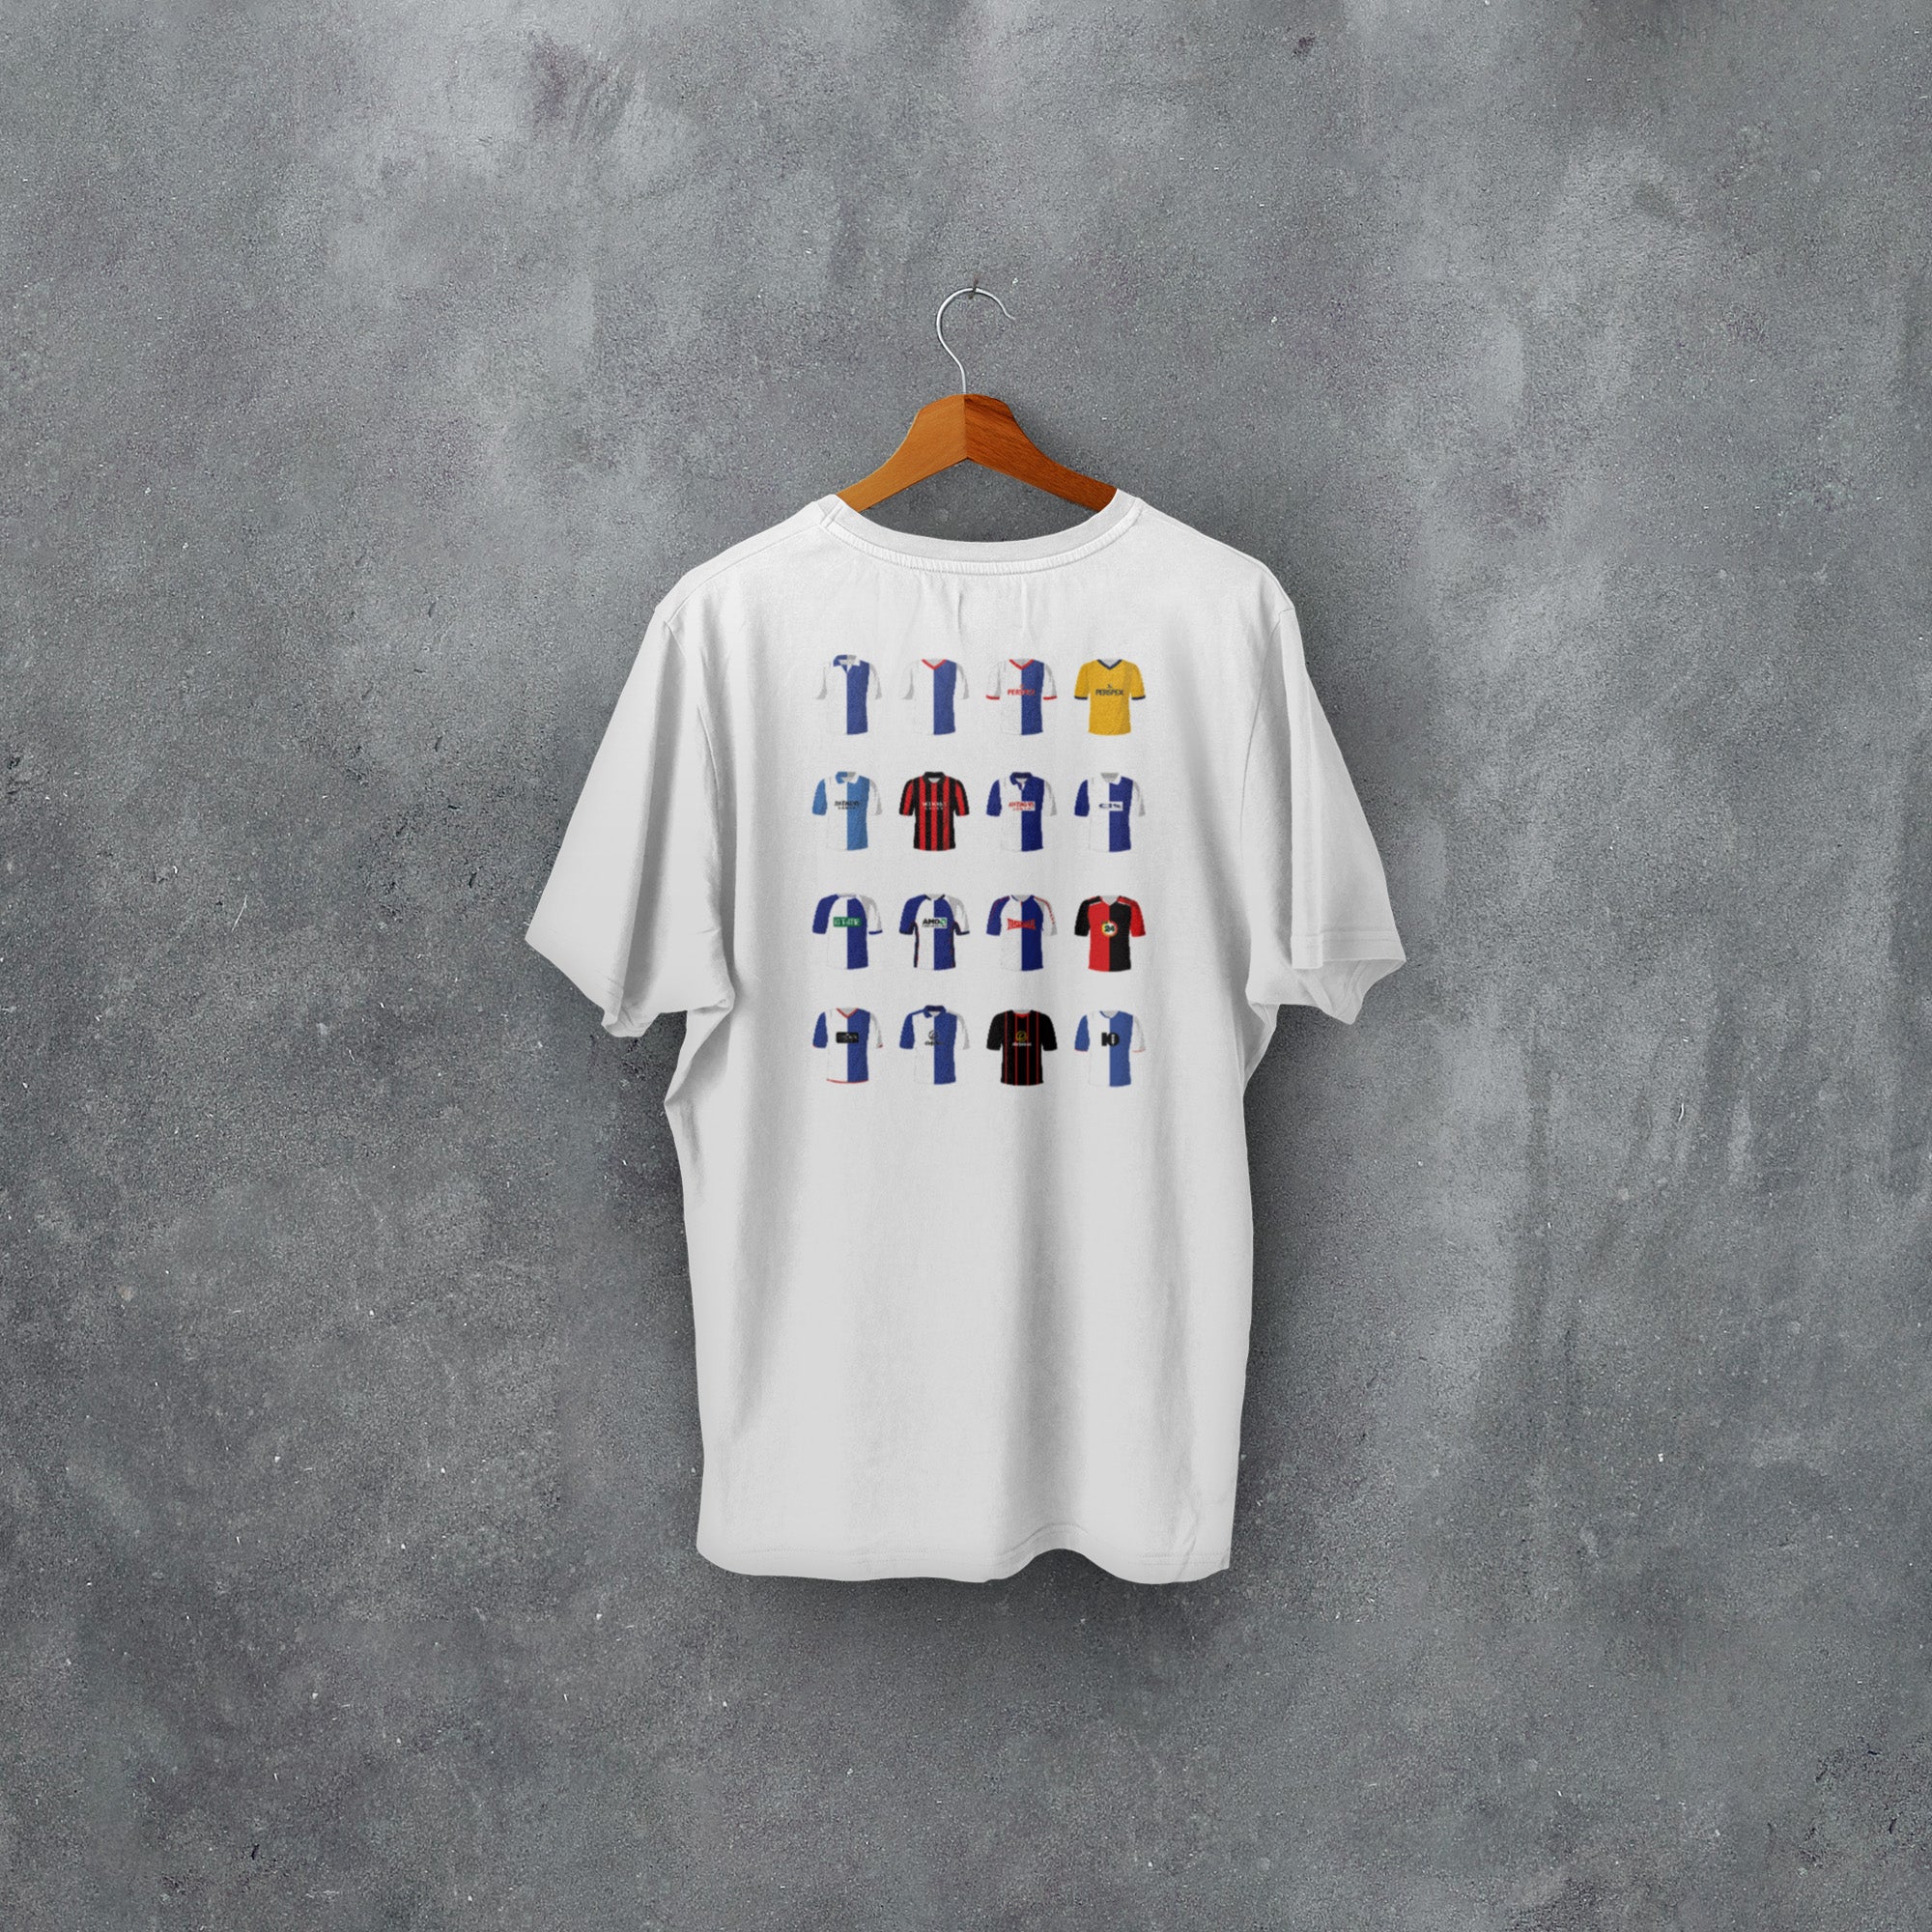 Blackburn Classic Kits Football T-Shirt